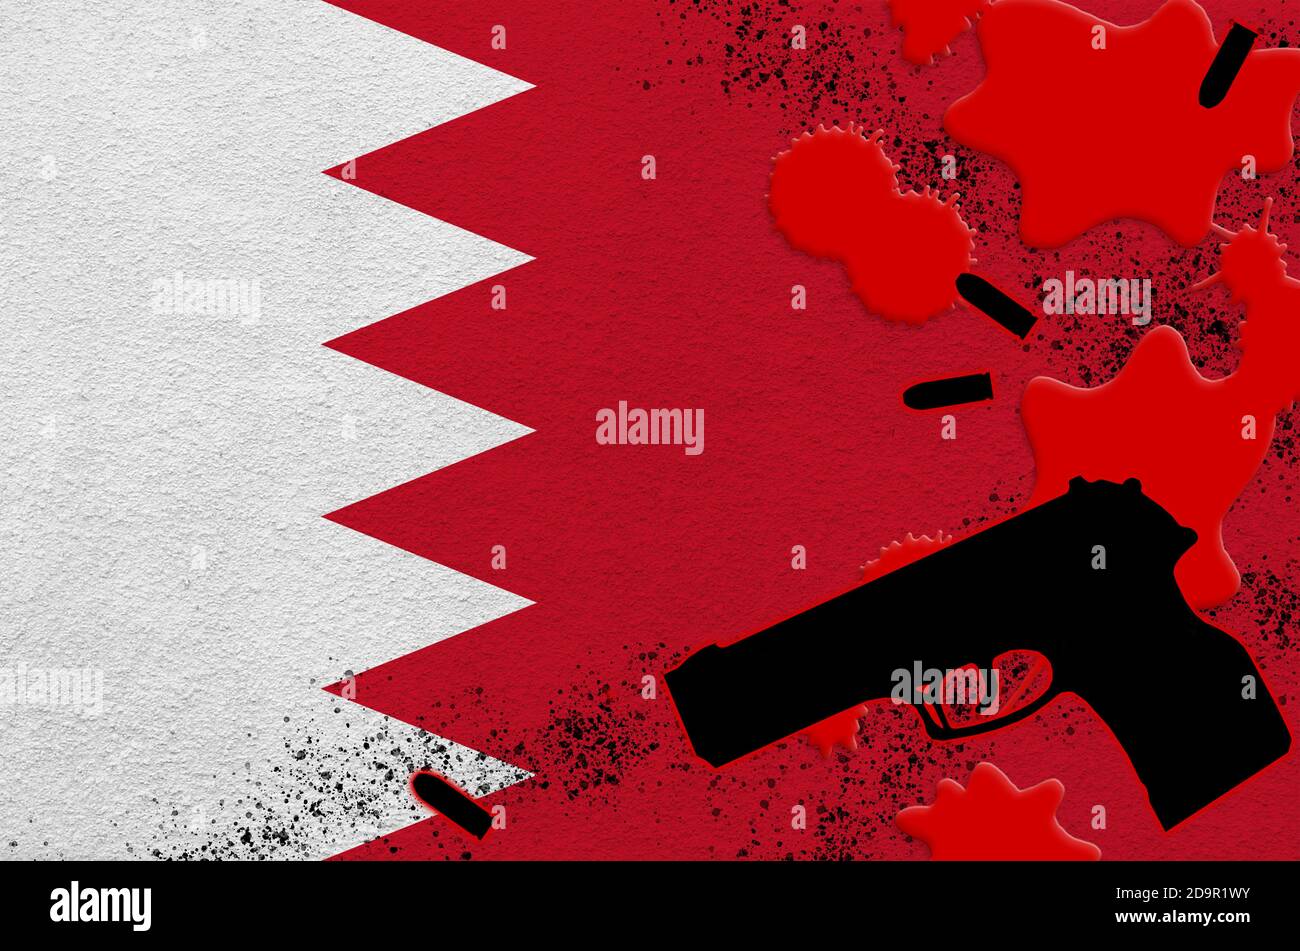 Drapeau de Bahreïn et arme à feu noire dans le sang rouge. Concept d'attaque terroriste ou d'opérations militaires avec un résultat mortel. Utilisation dangereuse d'un pistolet à main Banque D'Images